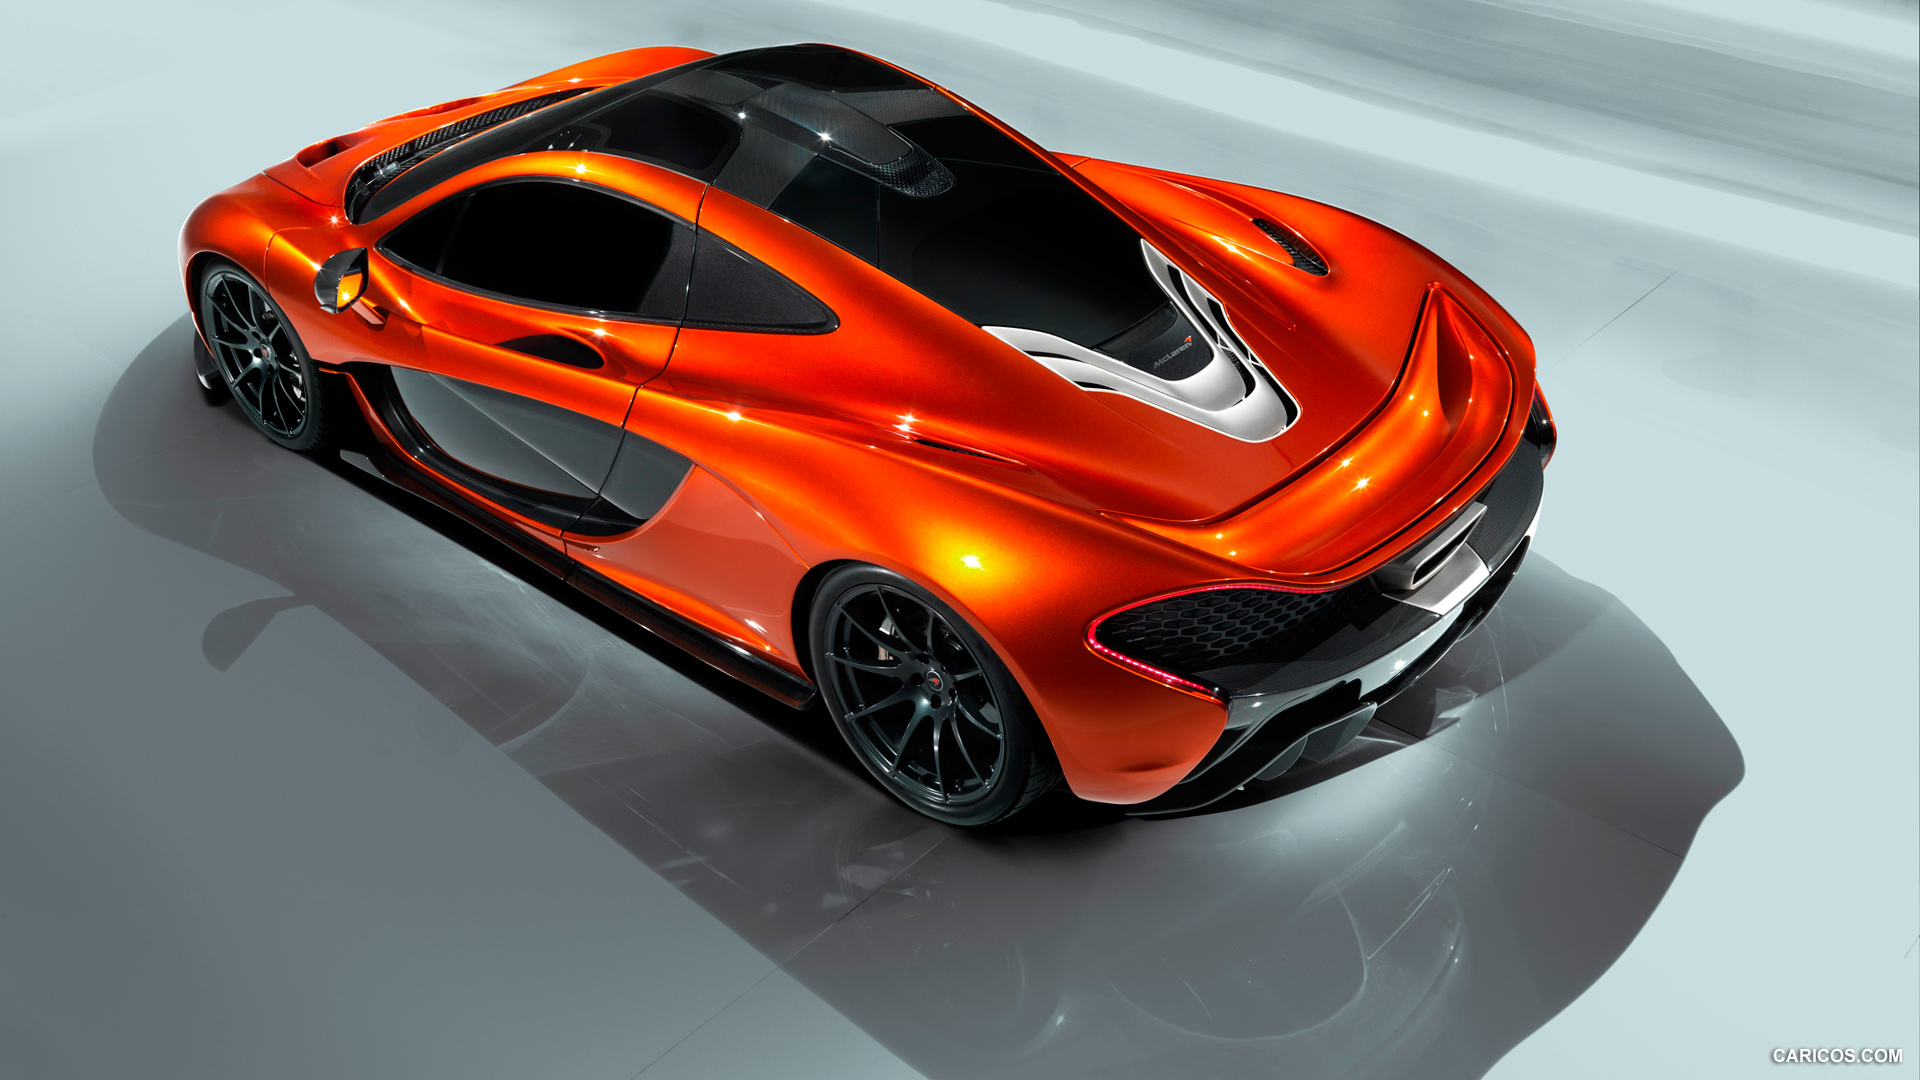 2012 McLaren P1 Concept  - Top, #8 of 15